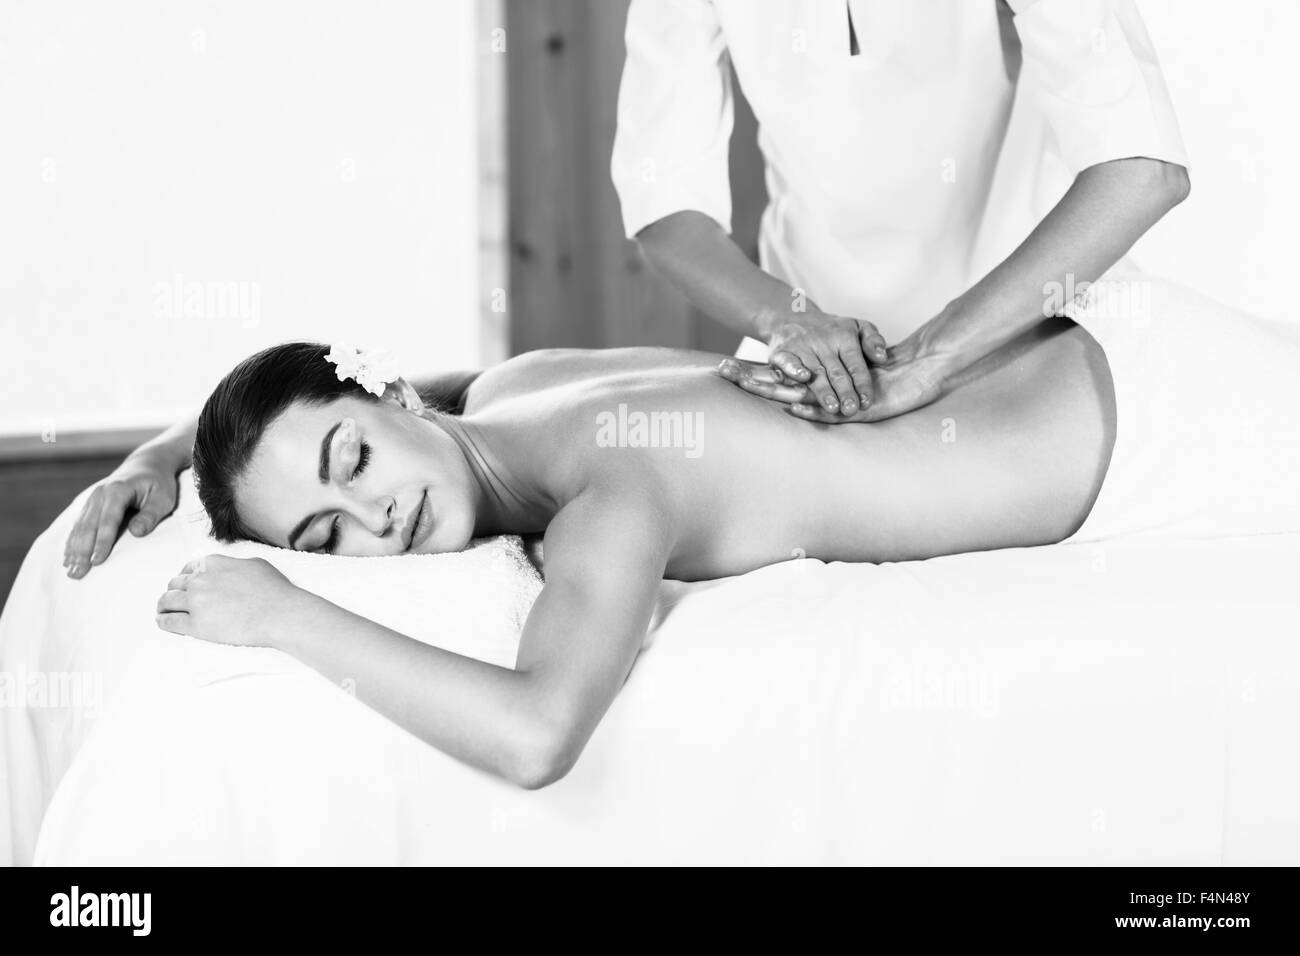 Woman enjoying massage. Stock Photo